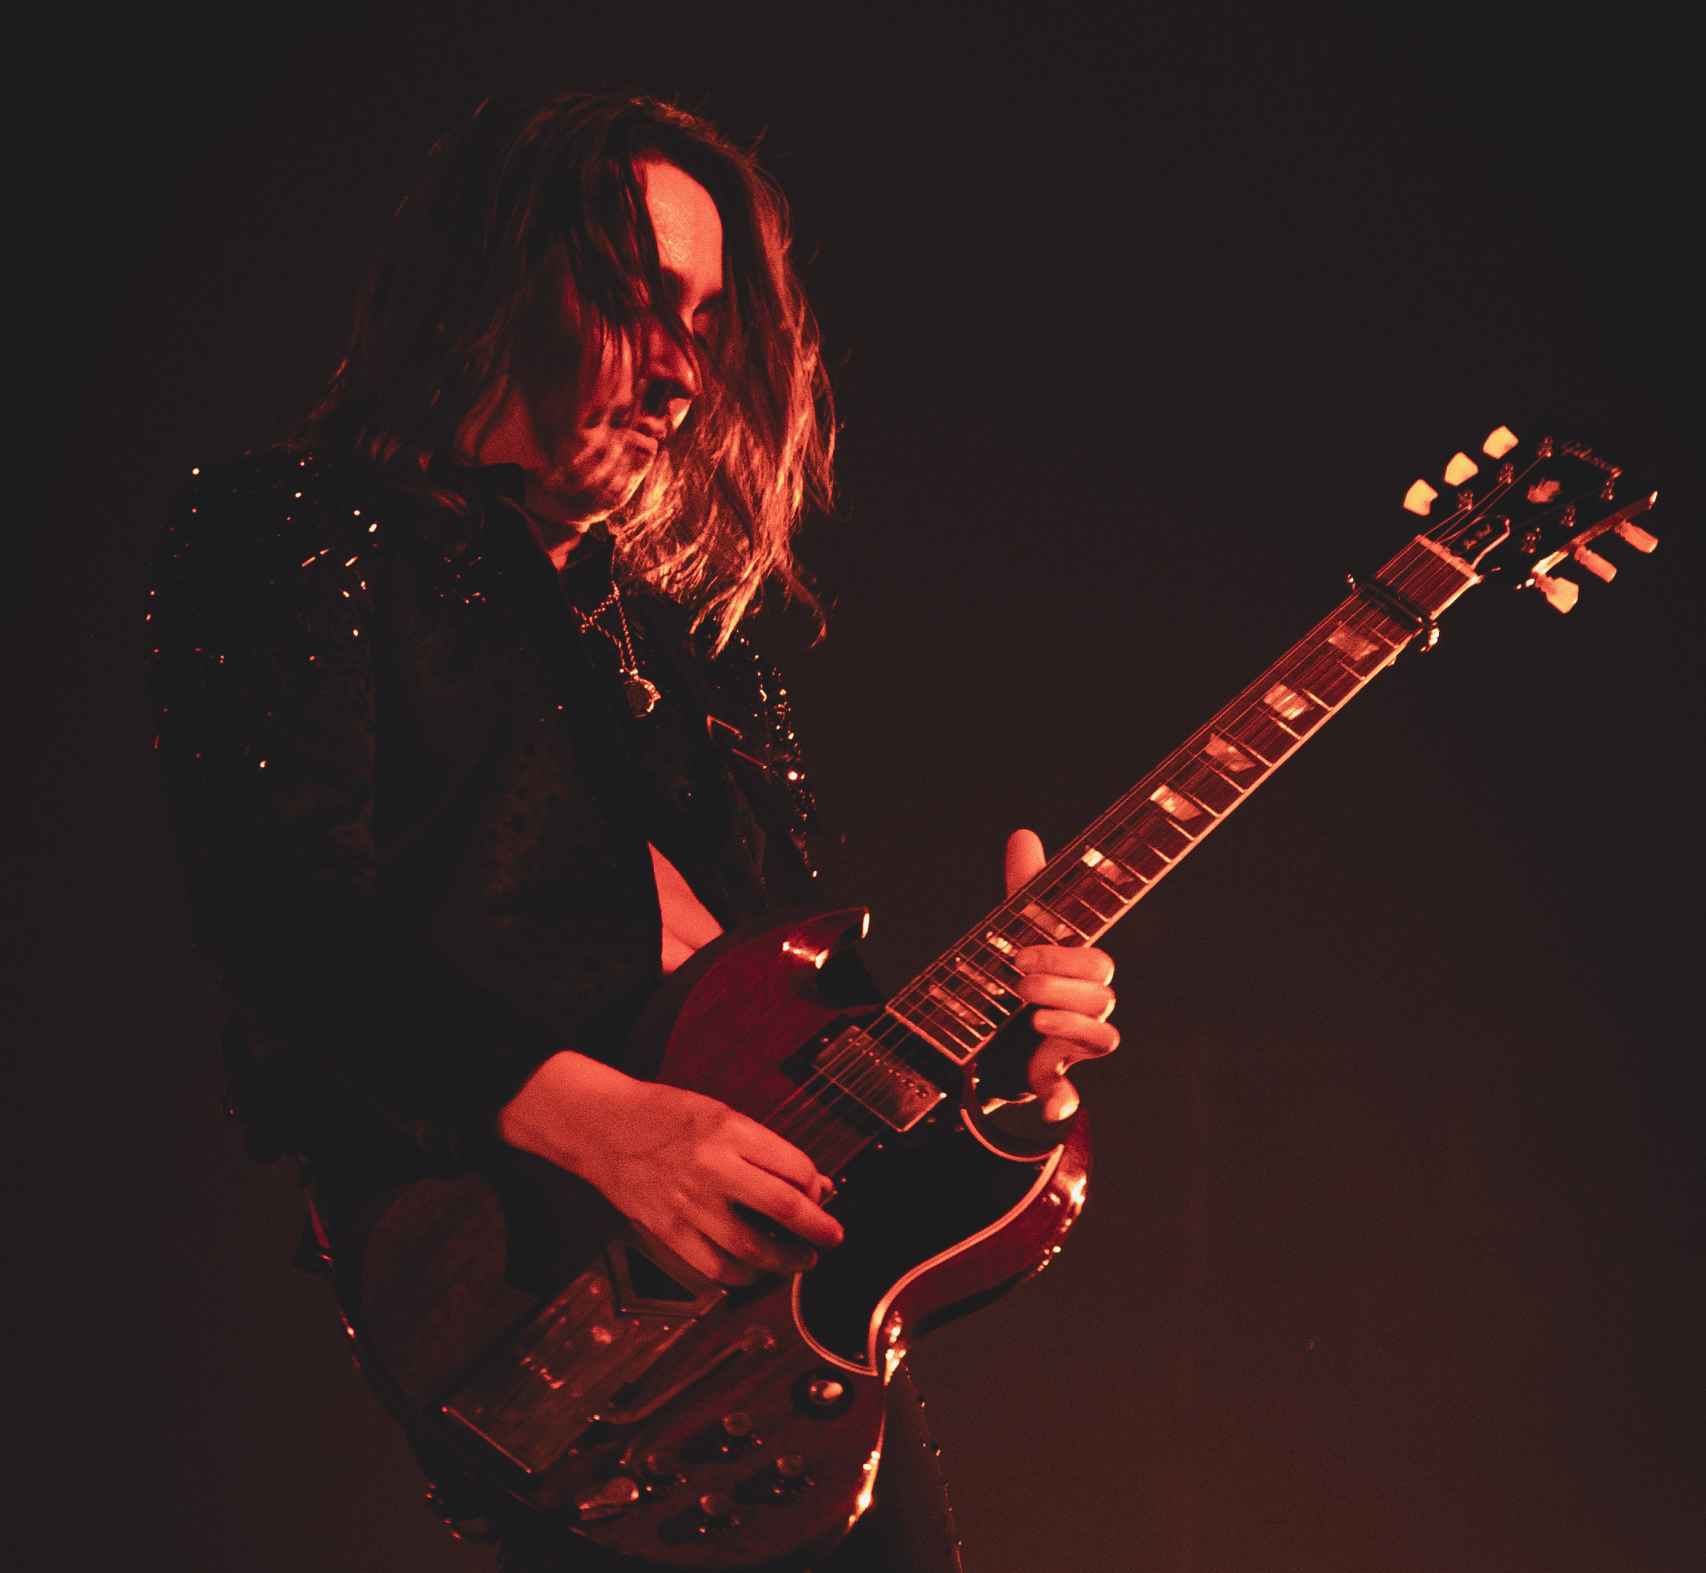 Jake Kiszka, guitarrista de Greta Van Fleet, durante su concierto de este lunes en Madrid. Foto: Dara Chriss